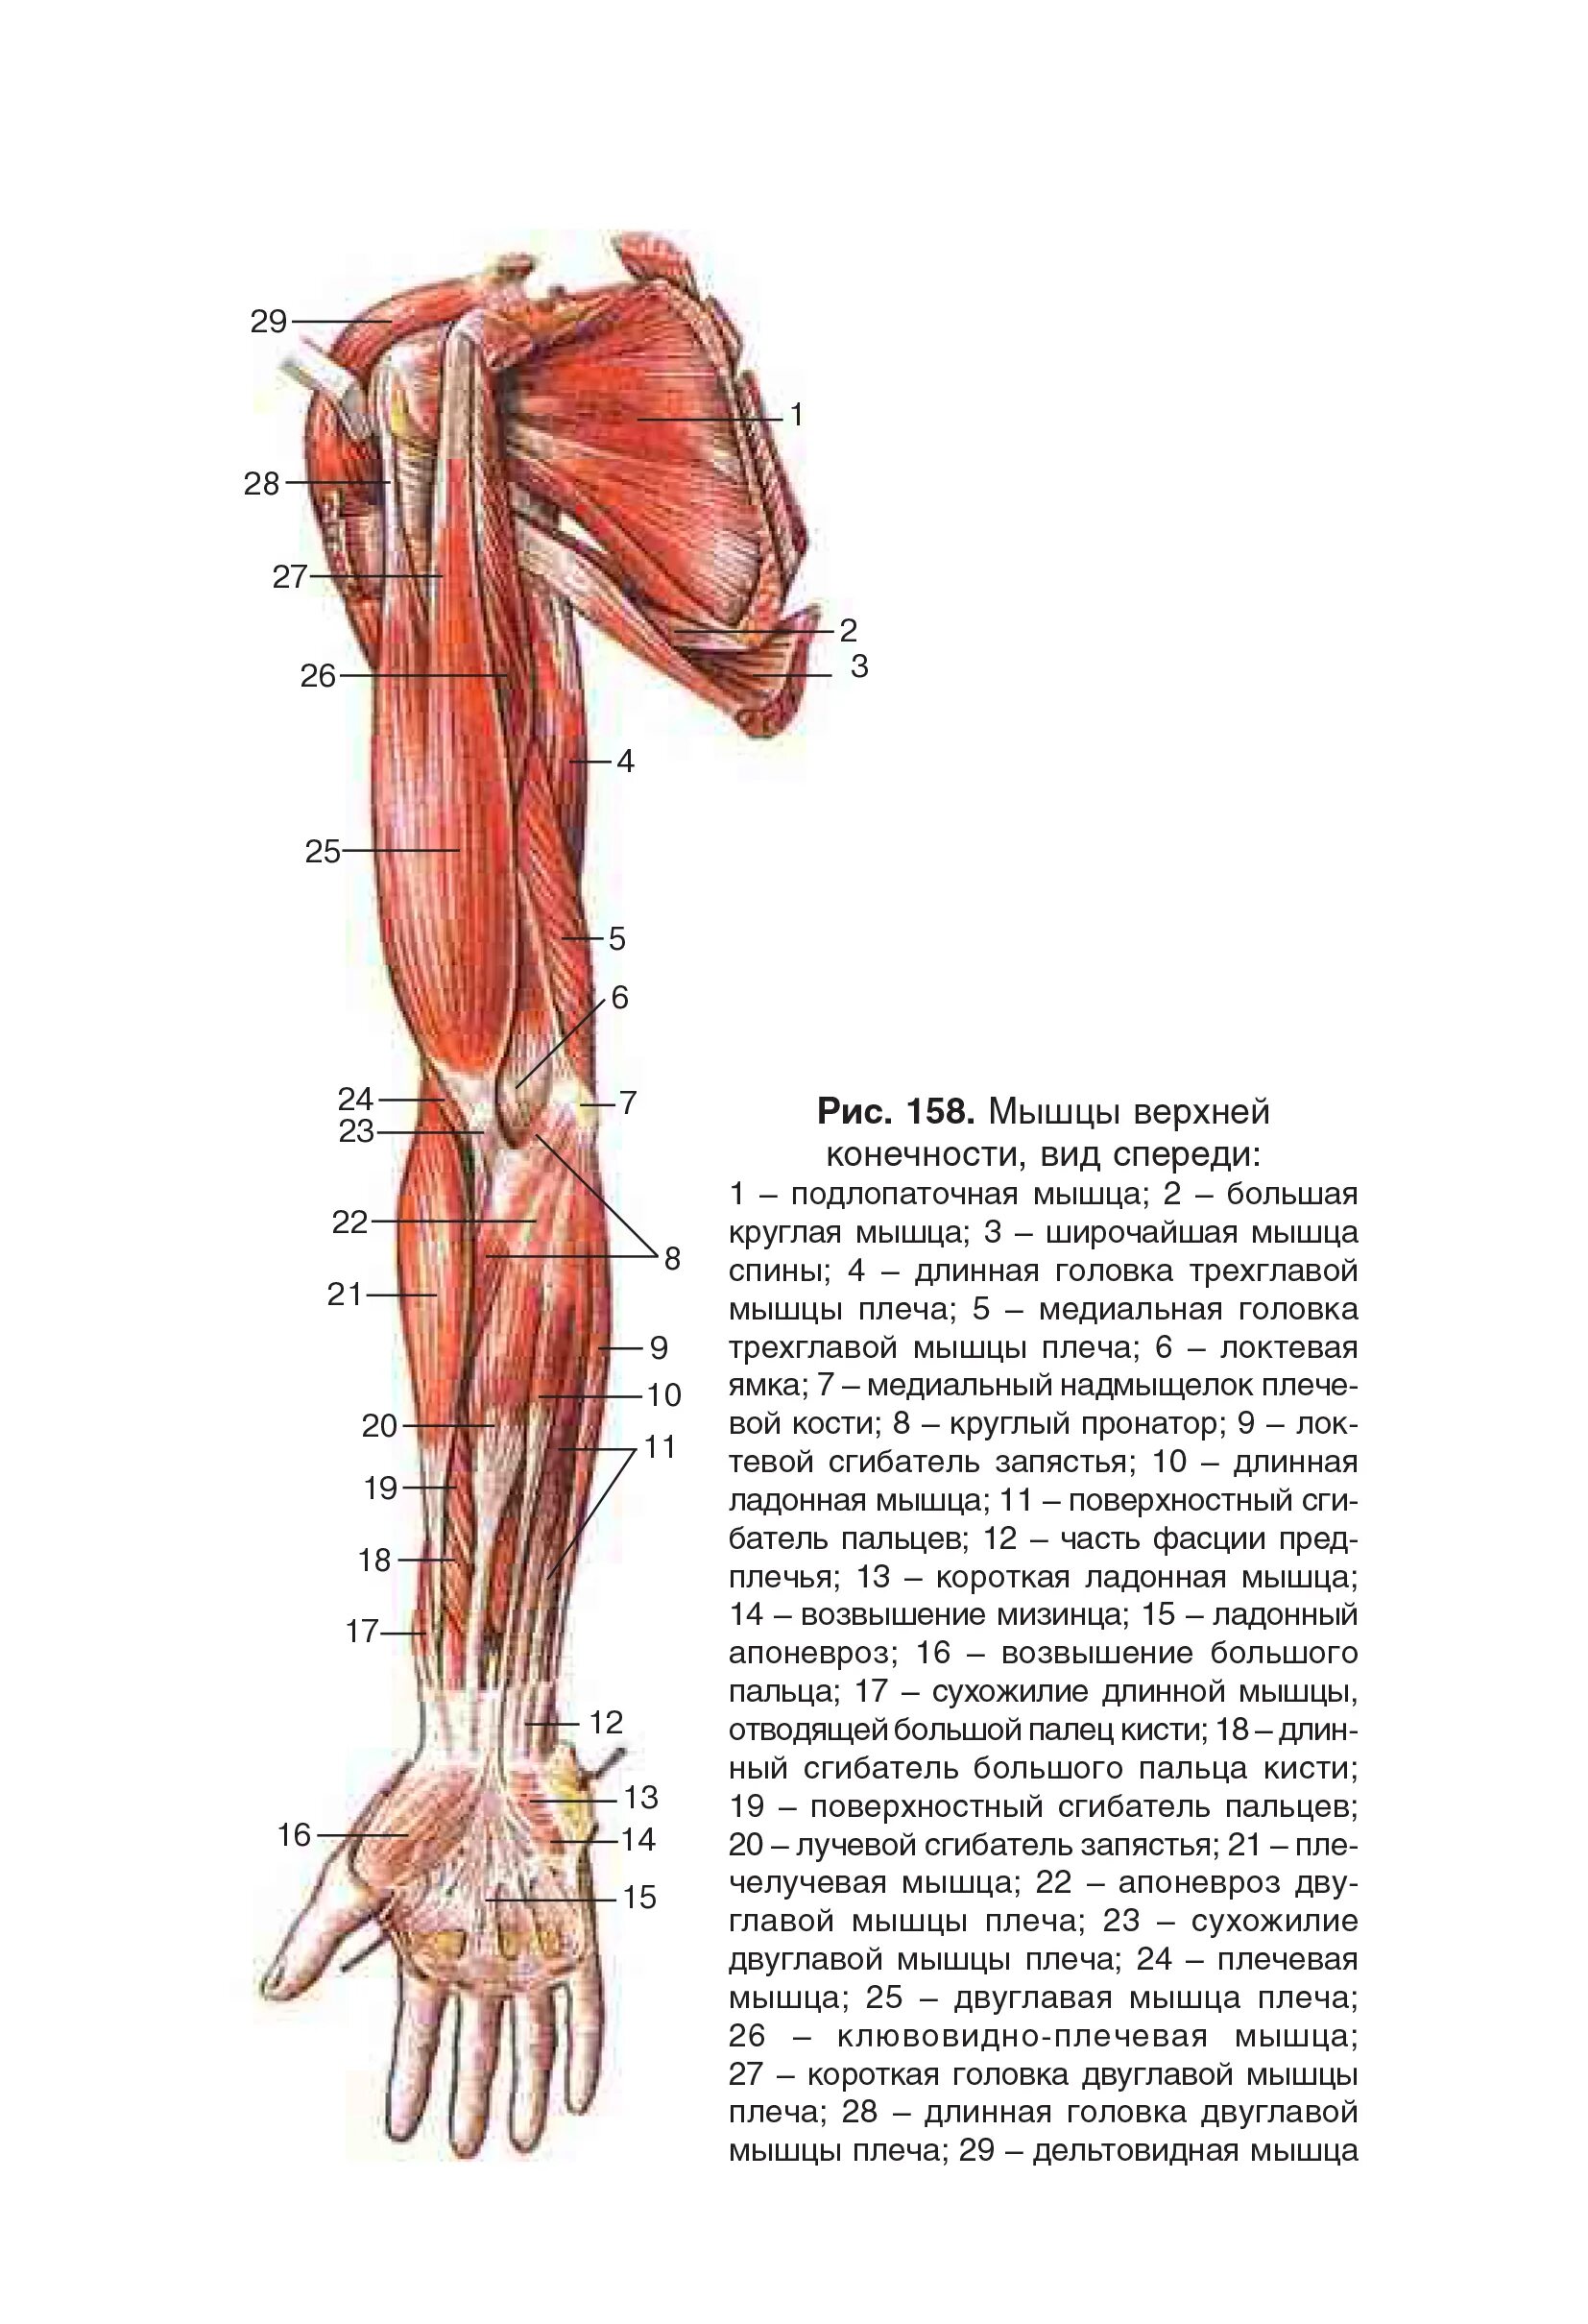 Мышцы руки анатомия человека. Мышцы верхней конечности вид спереди. Анатомия руки человека кости и мышцы. Мышцы верхних конечностей анатомия рисунок.